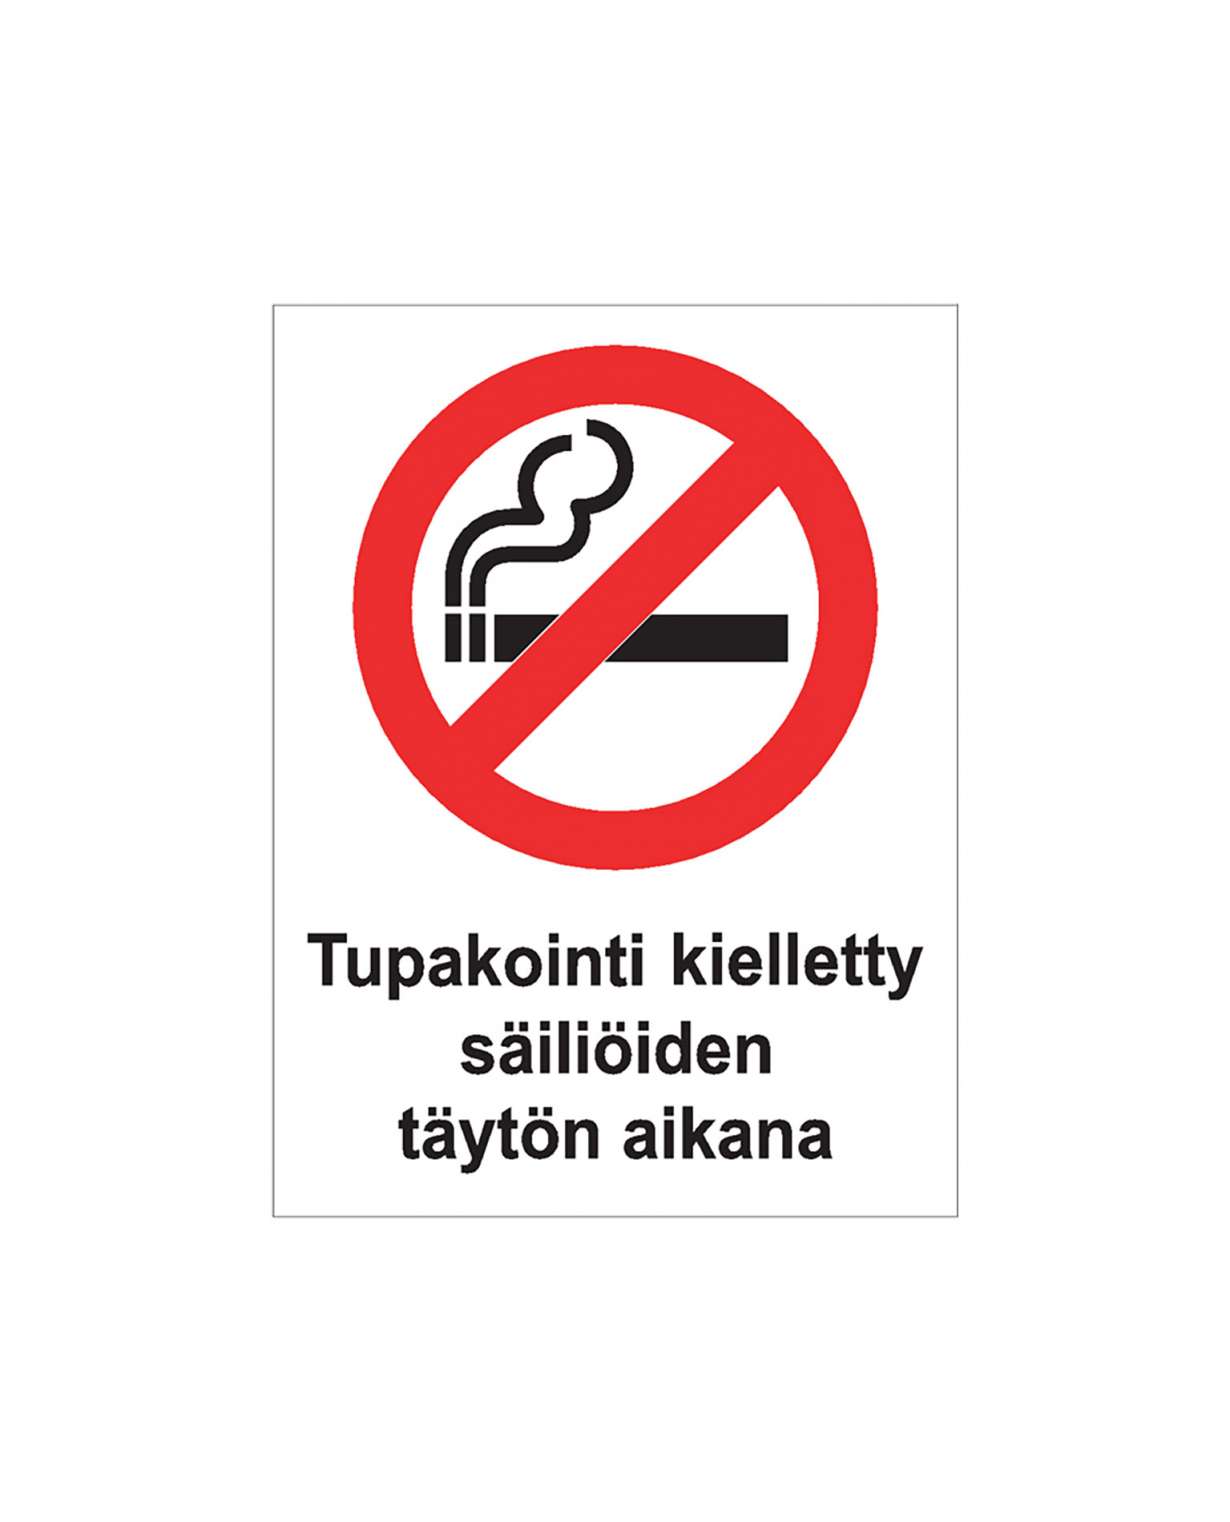 Tupakointi kielletty säiliöiden täytön aikana, Muovi 3mm, 200x300 mm